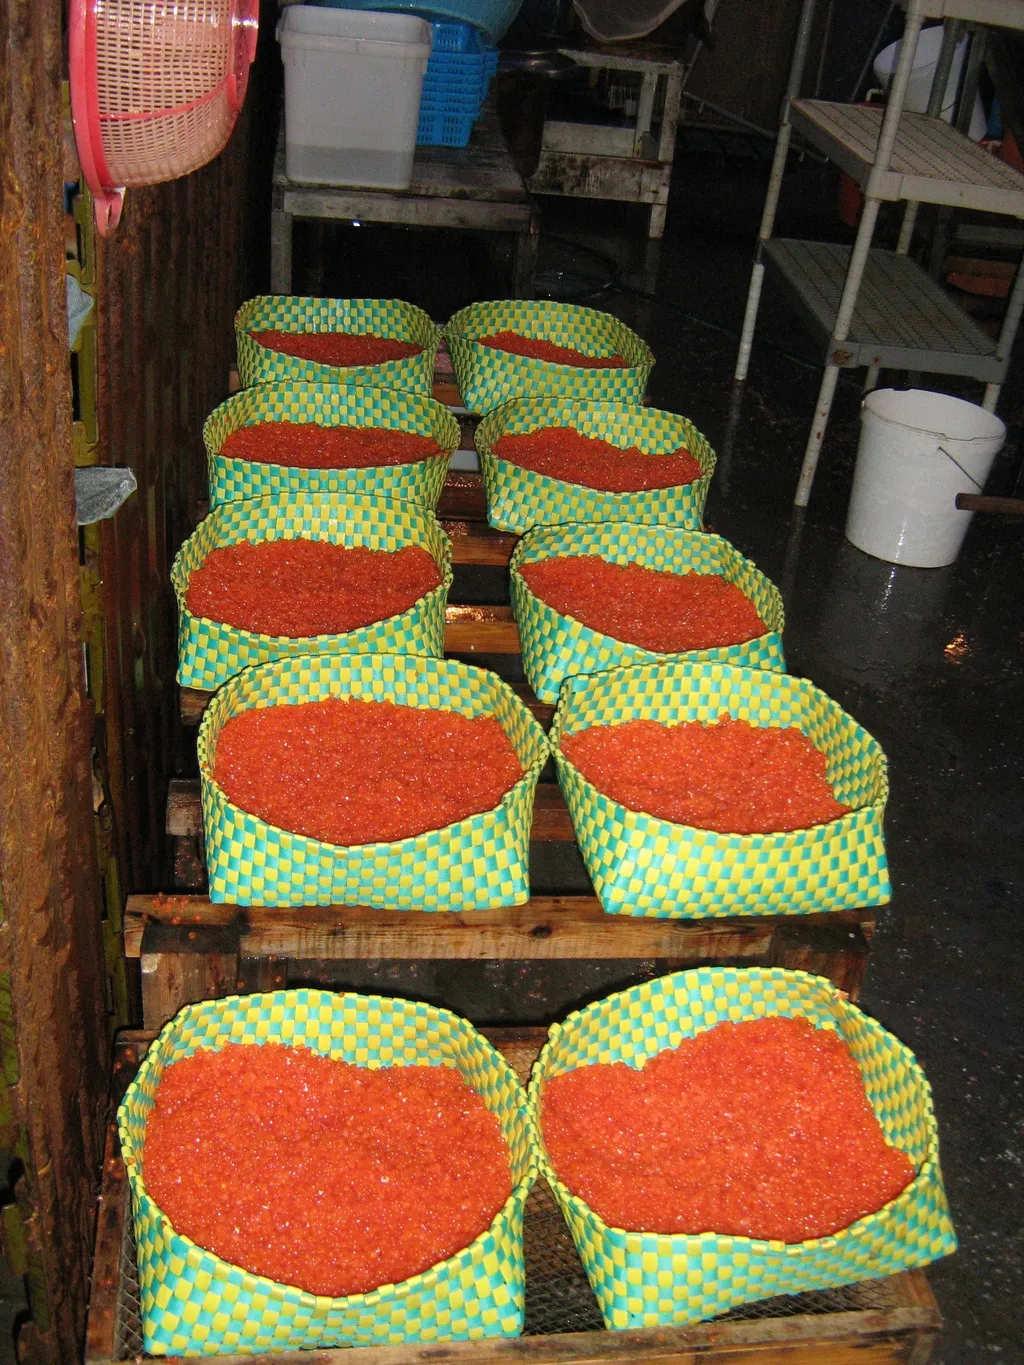 камчатская красная икра от производителя в Петропавловске-Камчатском